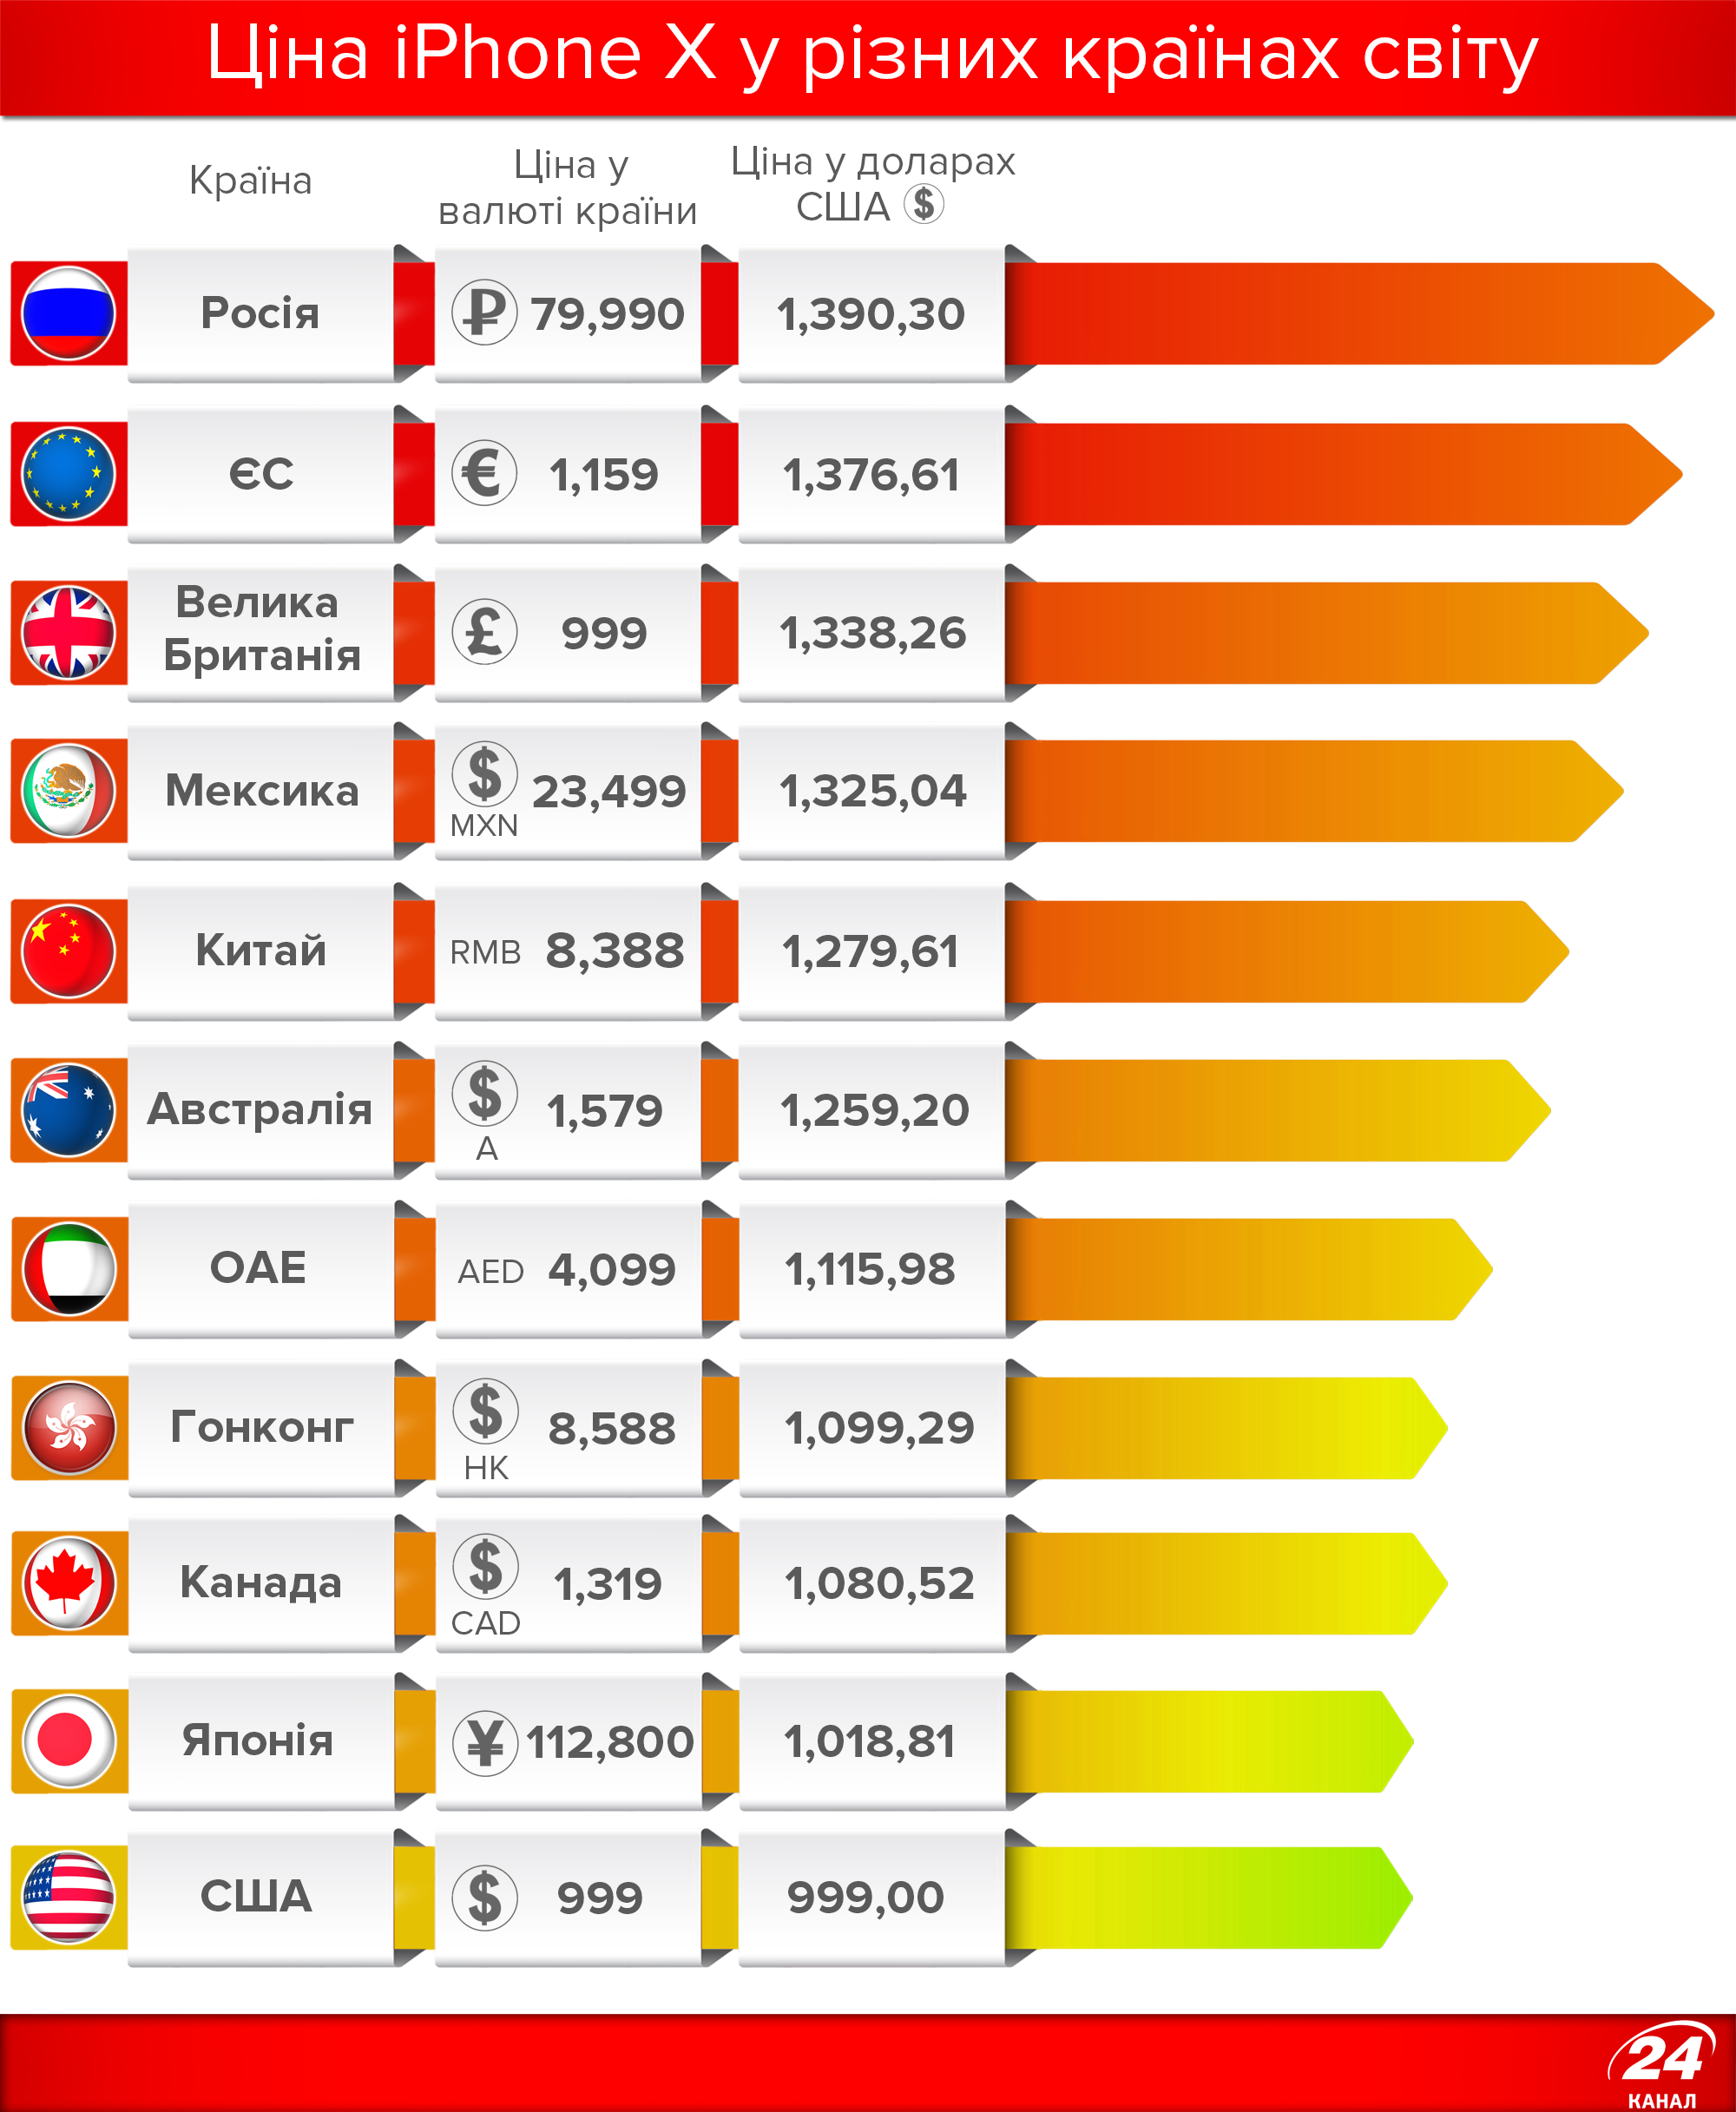 Какой страны айфон хороший. Количество продаж айфонов по странам. Количество проданных айфонов по странам. Стоимость айфона в разных странах. Статистика продаж айфонов по странам.